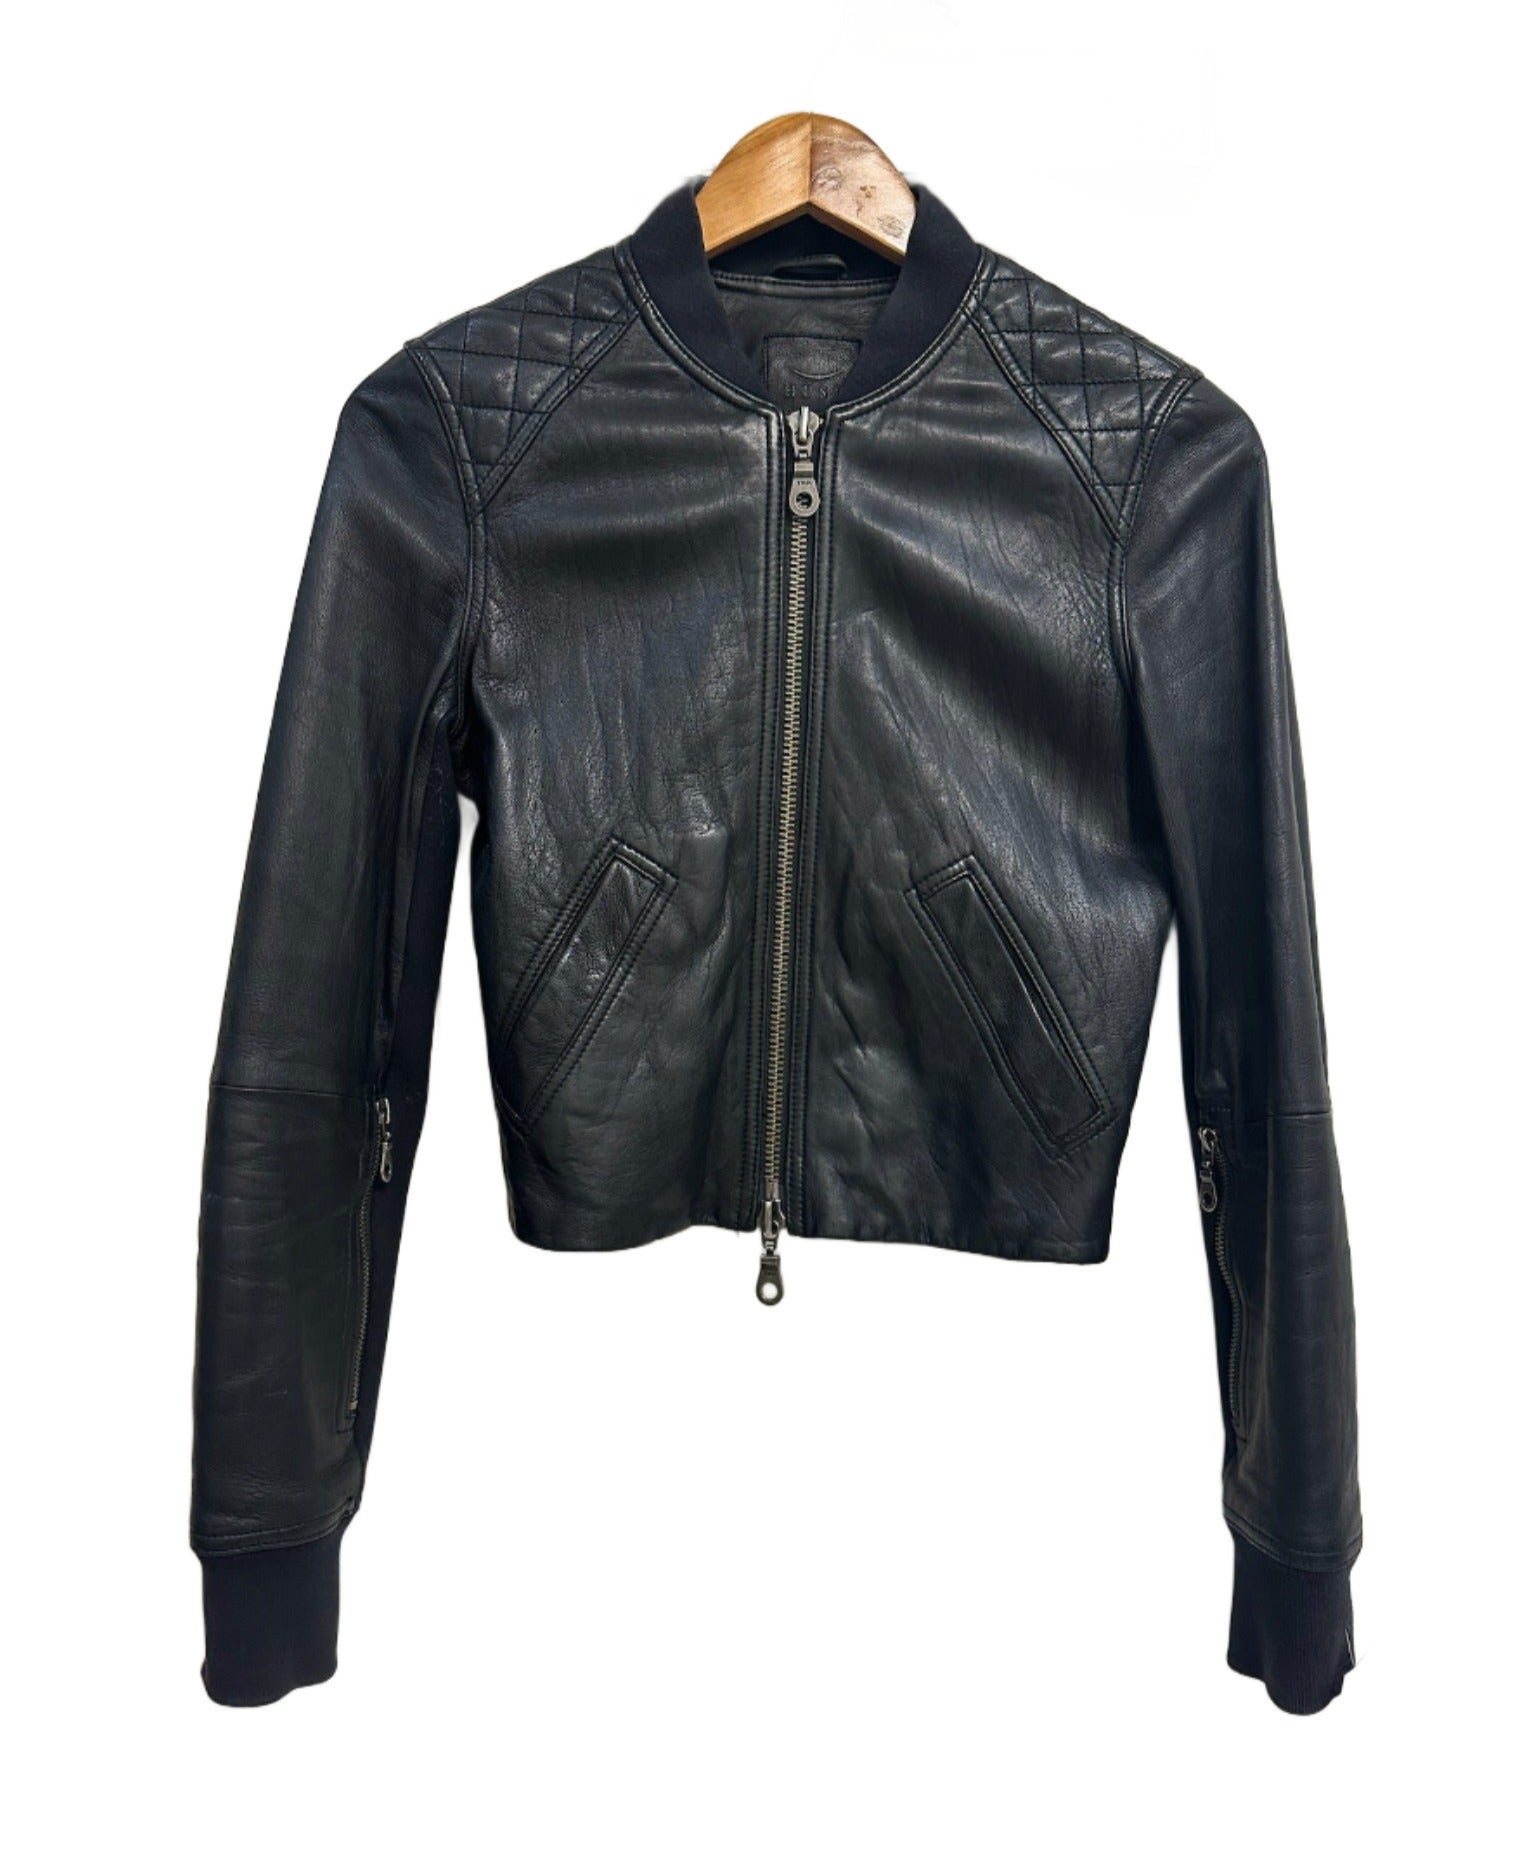 Husk Leather Bomber Jacket